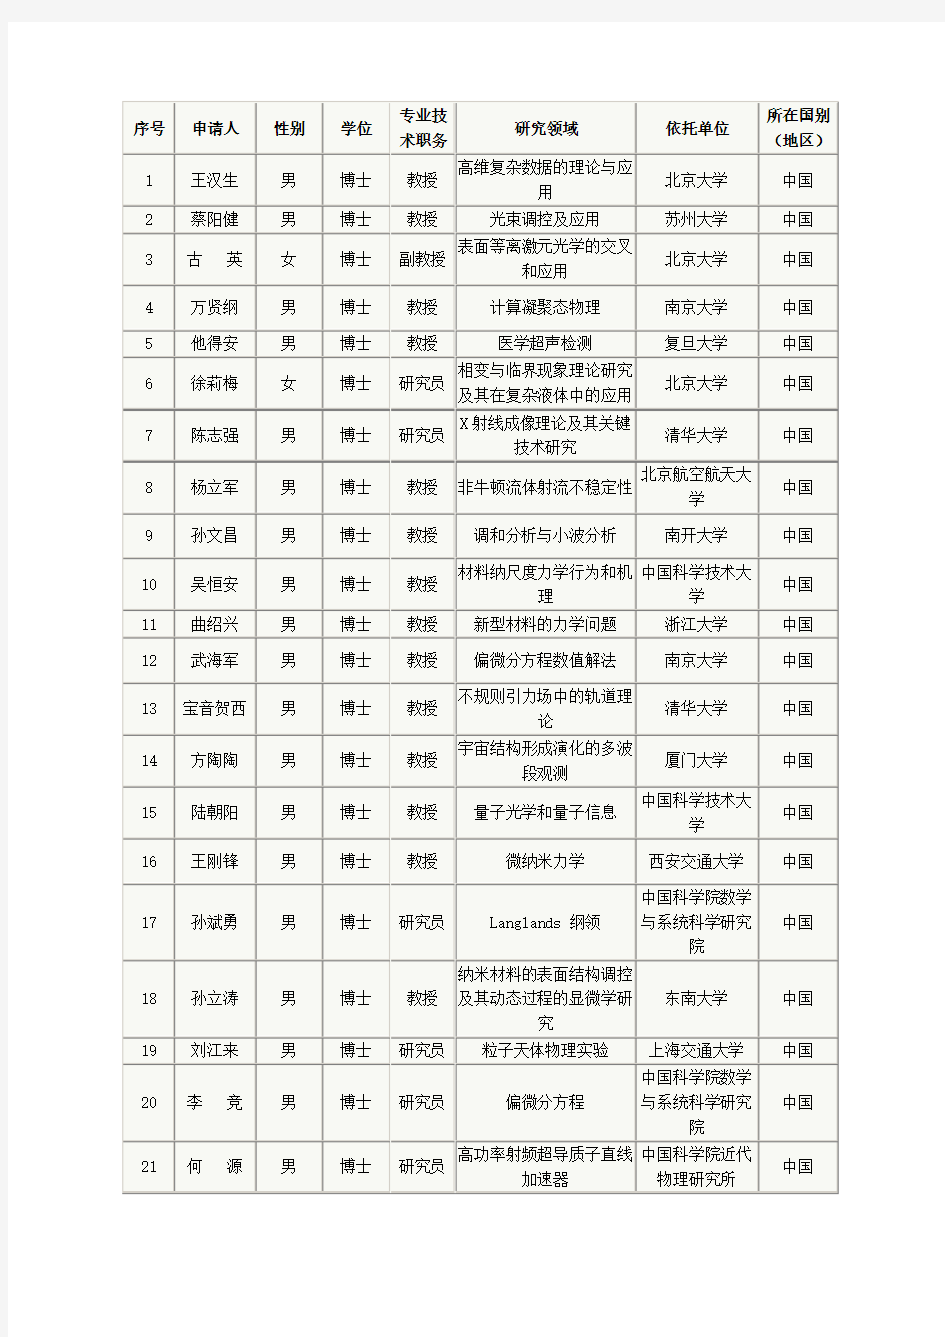 2015杰青名单